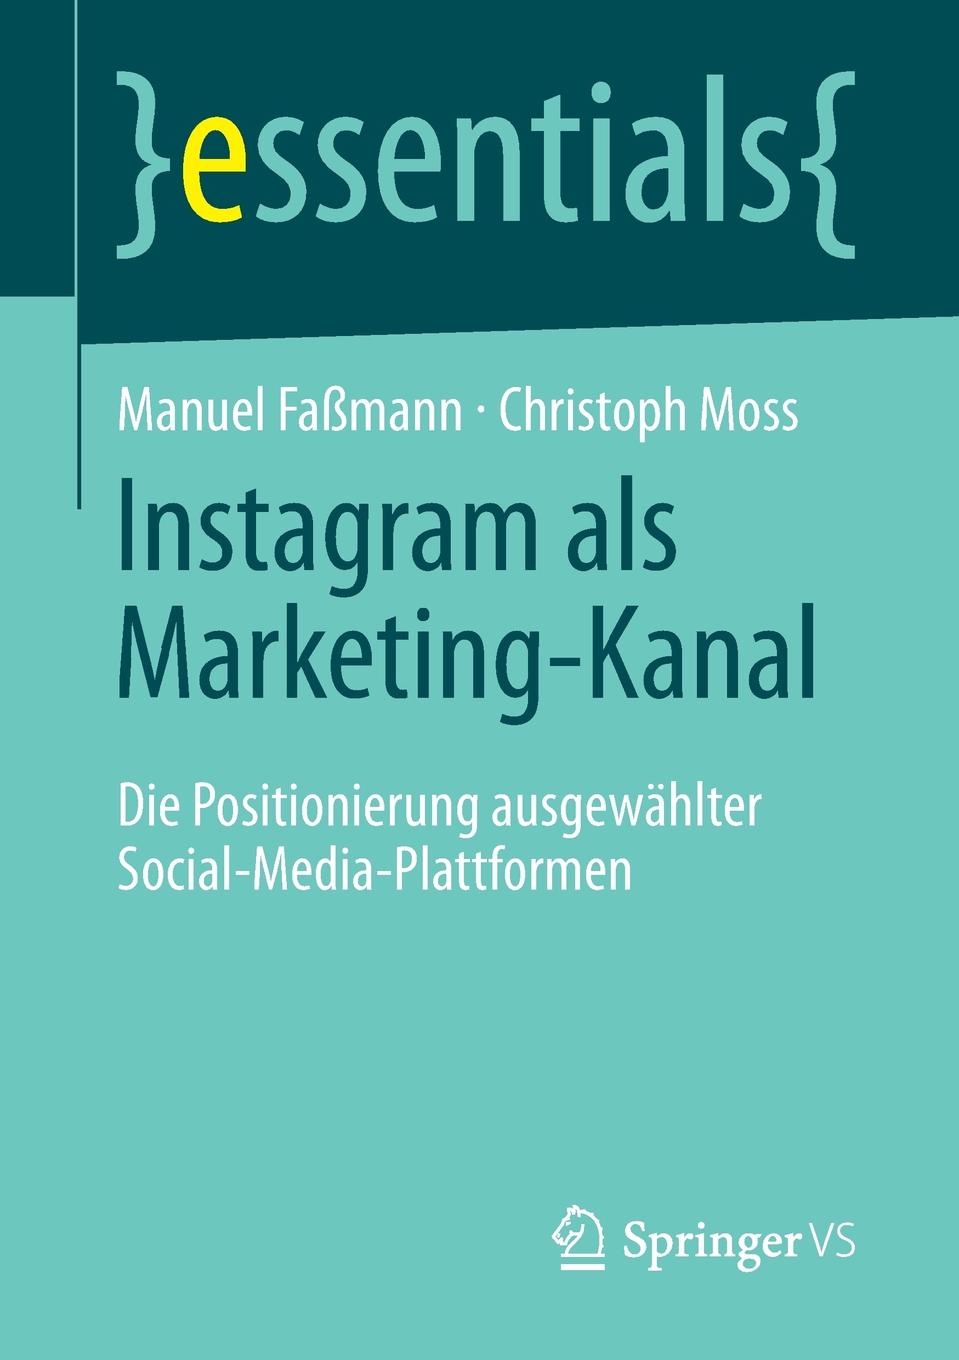 Instagram als Marketing-Kanal. Die Positionierung ausgewahlter Social-Media-Plattformen